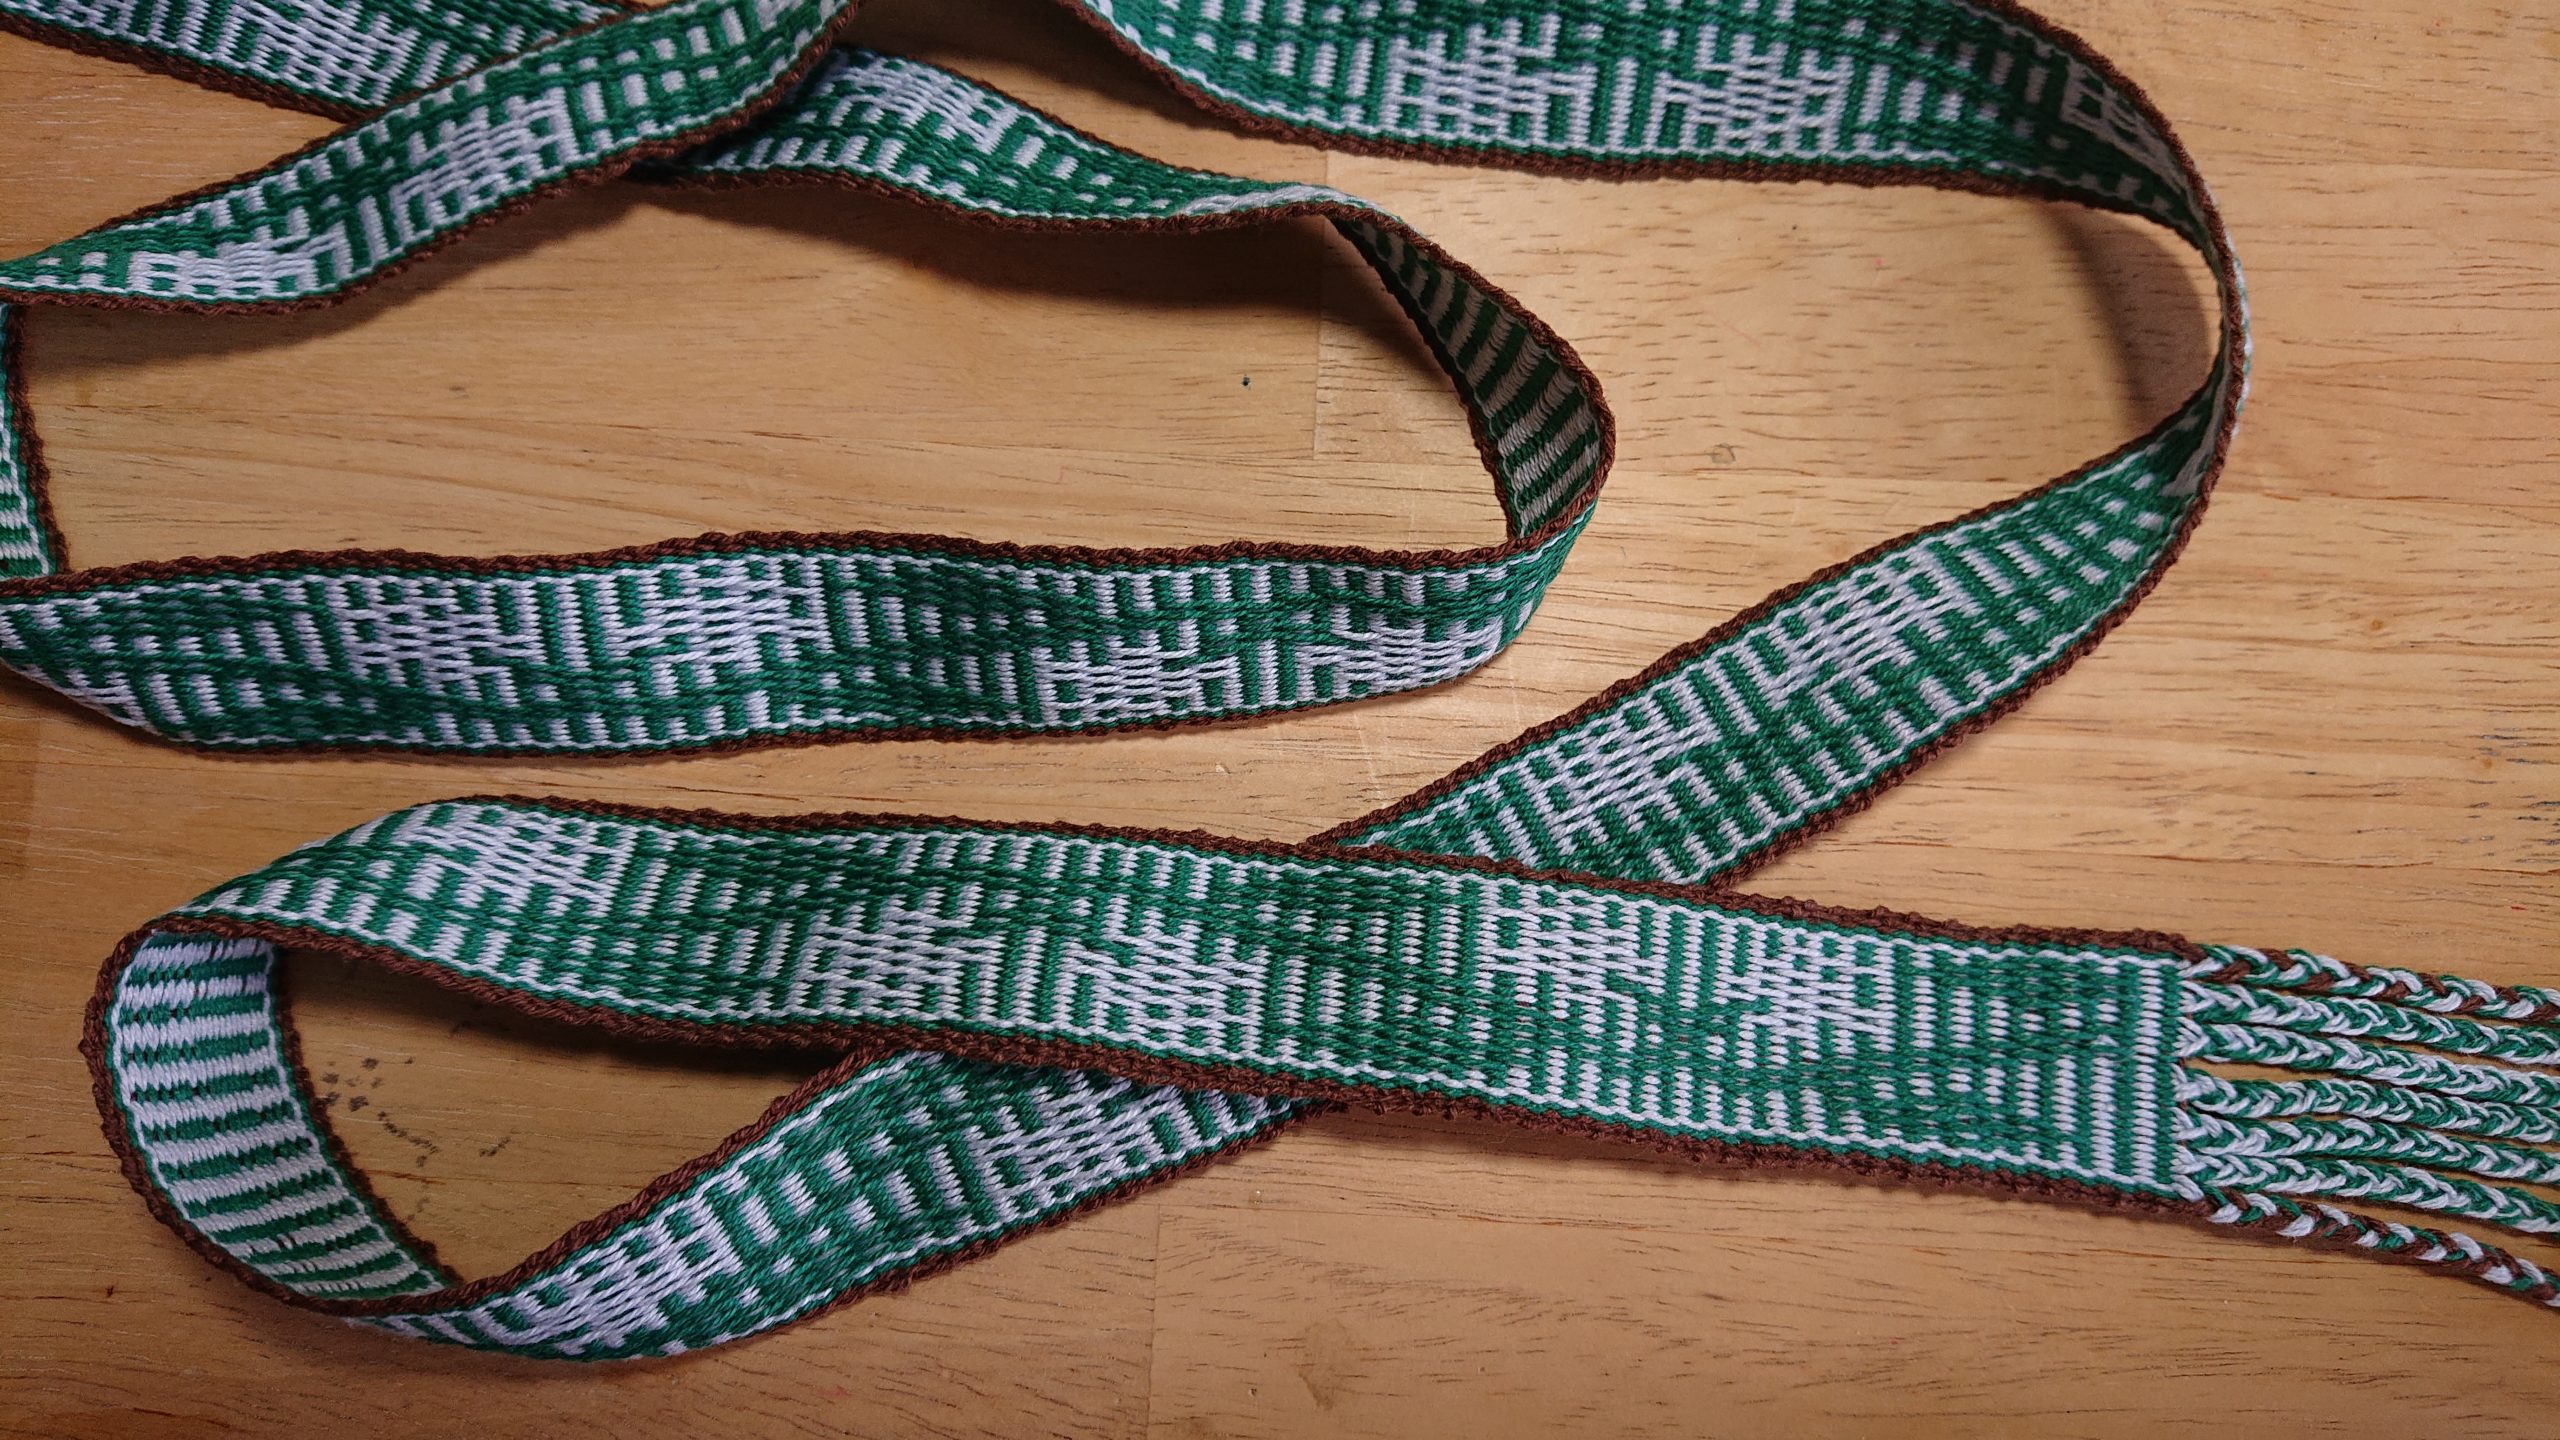 Eadgyth aet Staeningum – Inkle-woven belt